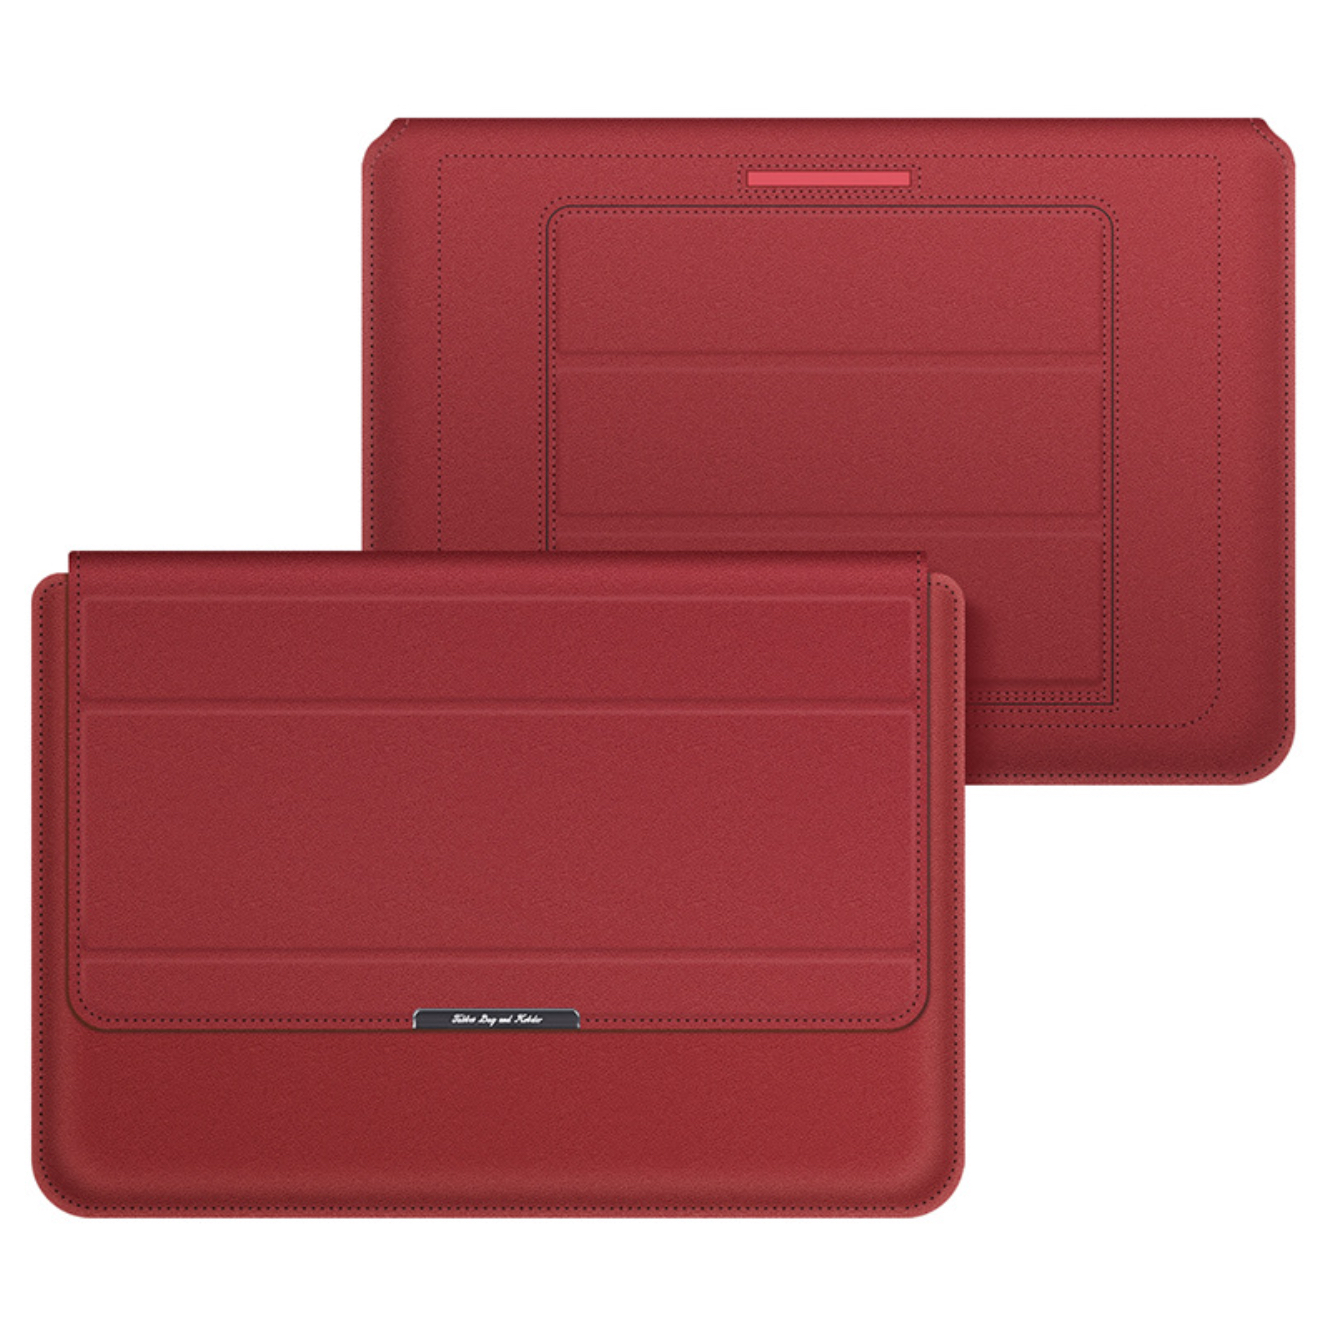 Túi chống sốc bao da dành cho ipad laptop macbook surface kiêm giá đỡ tản nhiệt kèm ví đựng sạc chuột - Hàng chính hãng